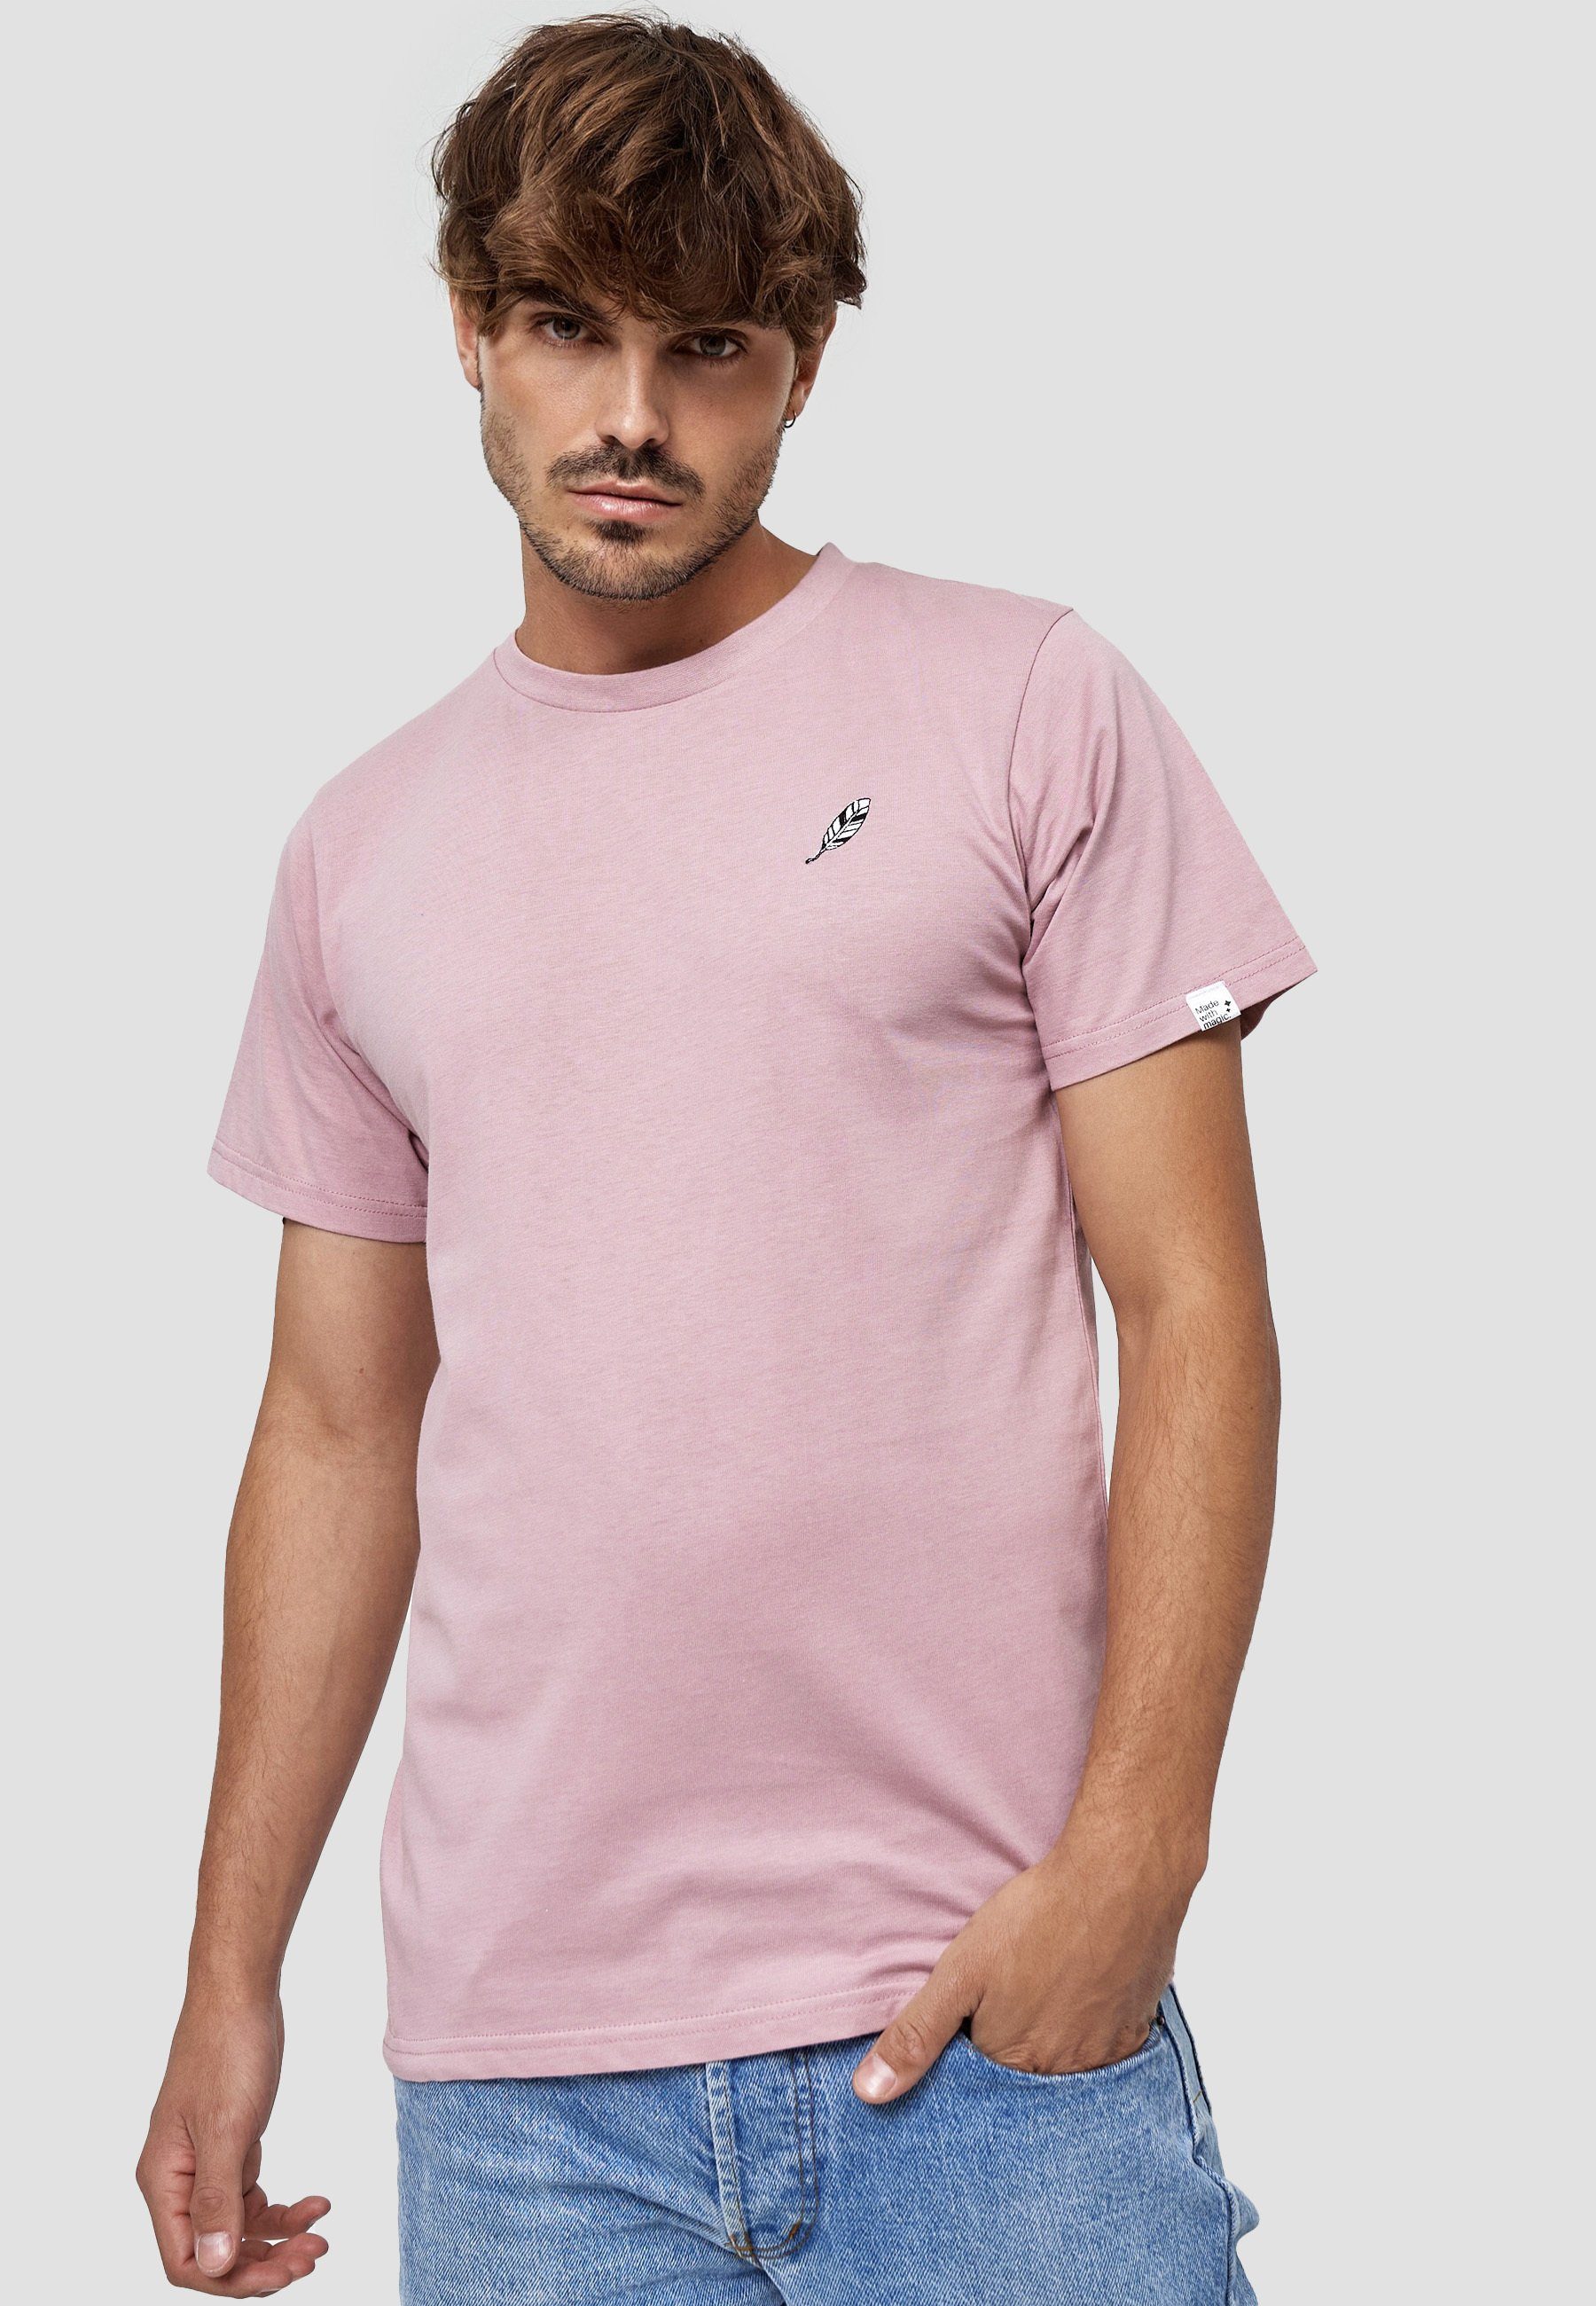 MIKON T-Shirt Feder GOTS zertifizierte Bio-Baumwolle Pink